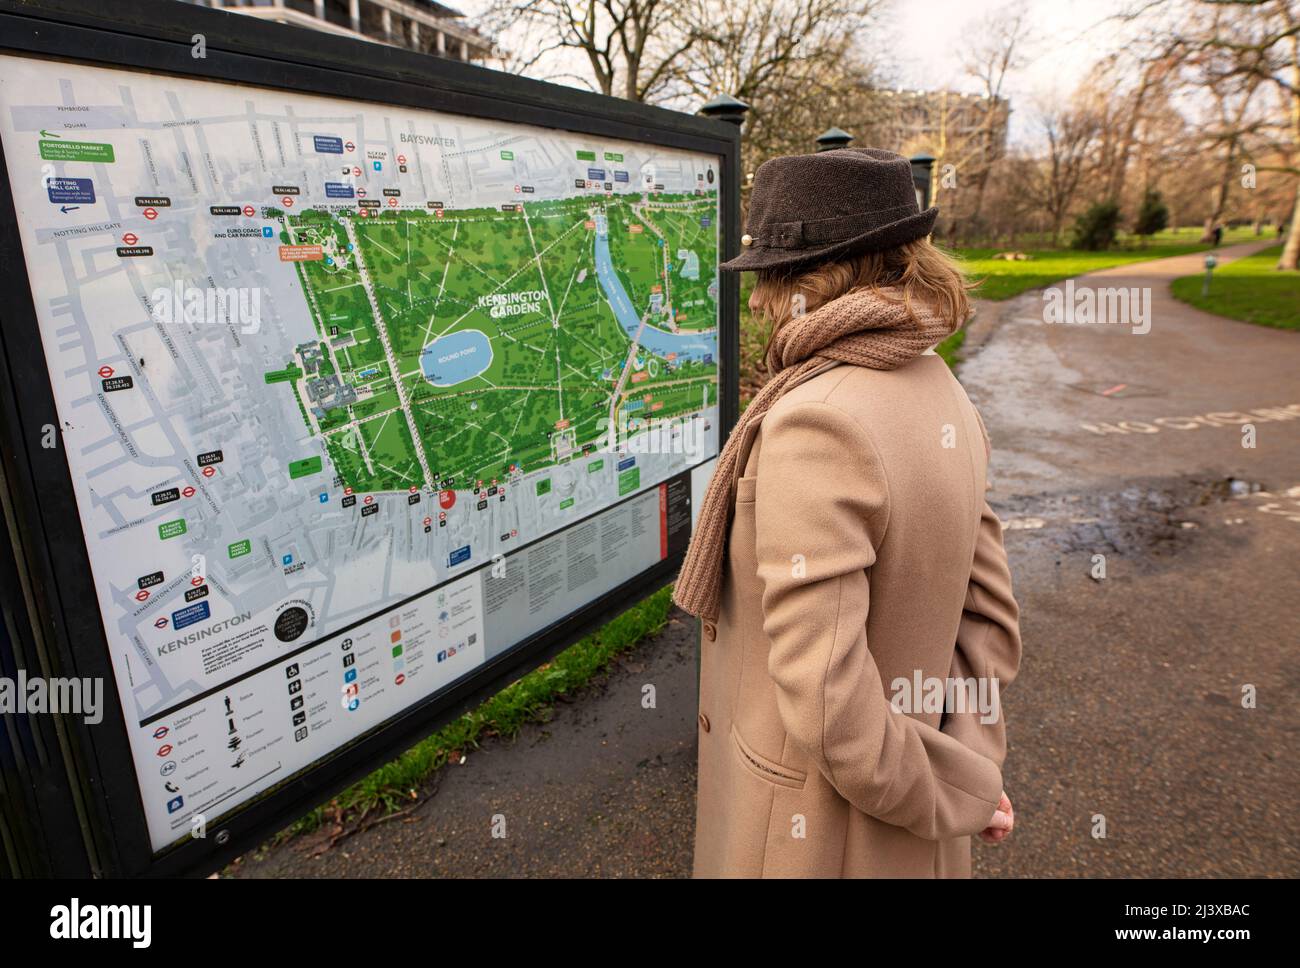 Frau mit Trilby-Hut, Schal und Kaschmirmantel, die das Schild im Eingang zu Kensington Gardens, London, untersucht Stockfoto